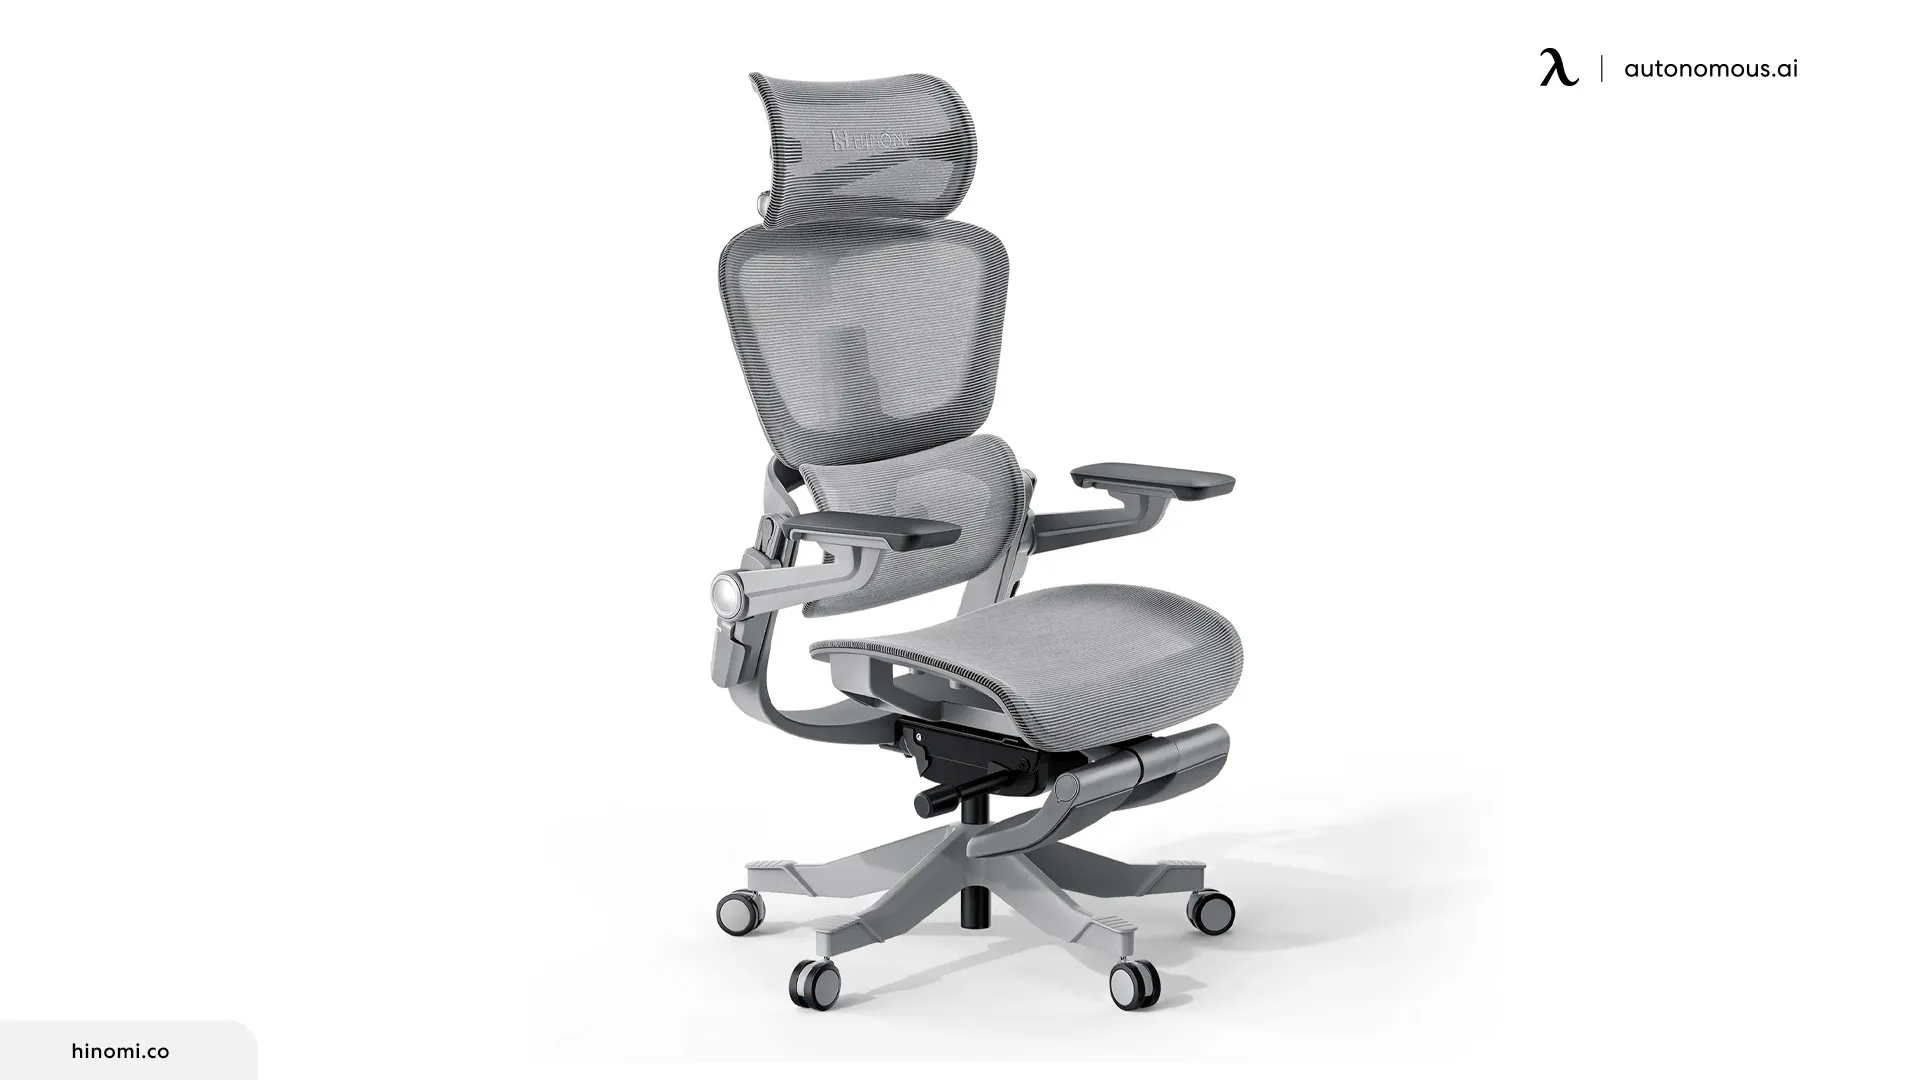 H1Pro V2 Ergonomic Office Chair